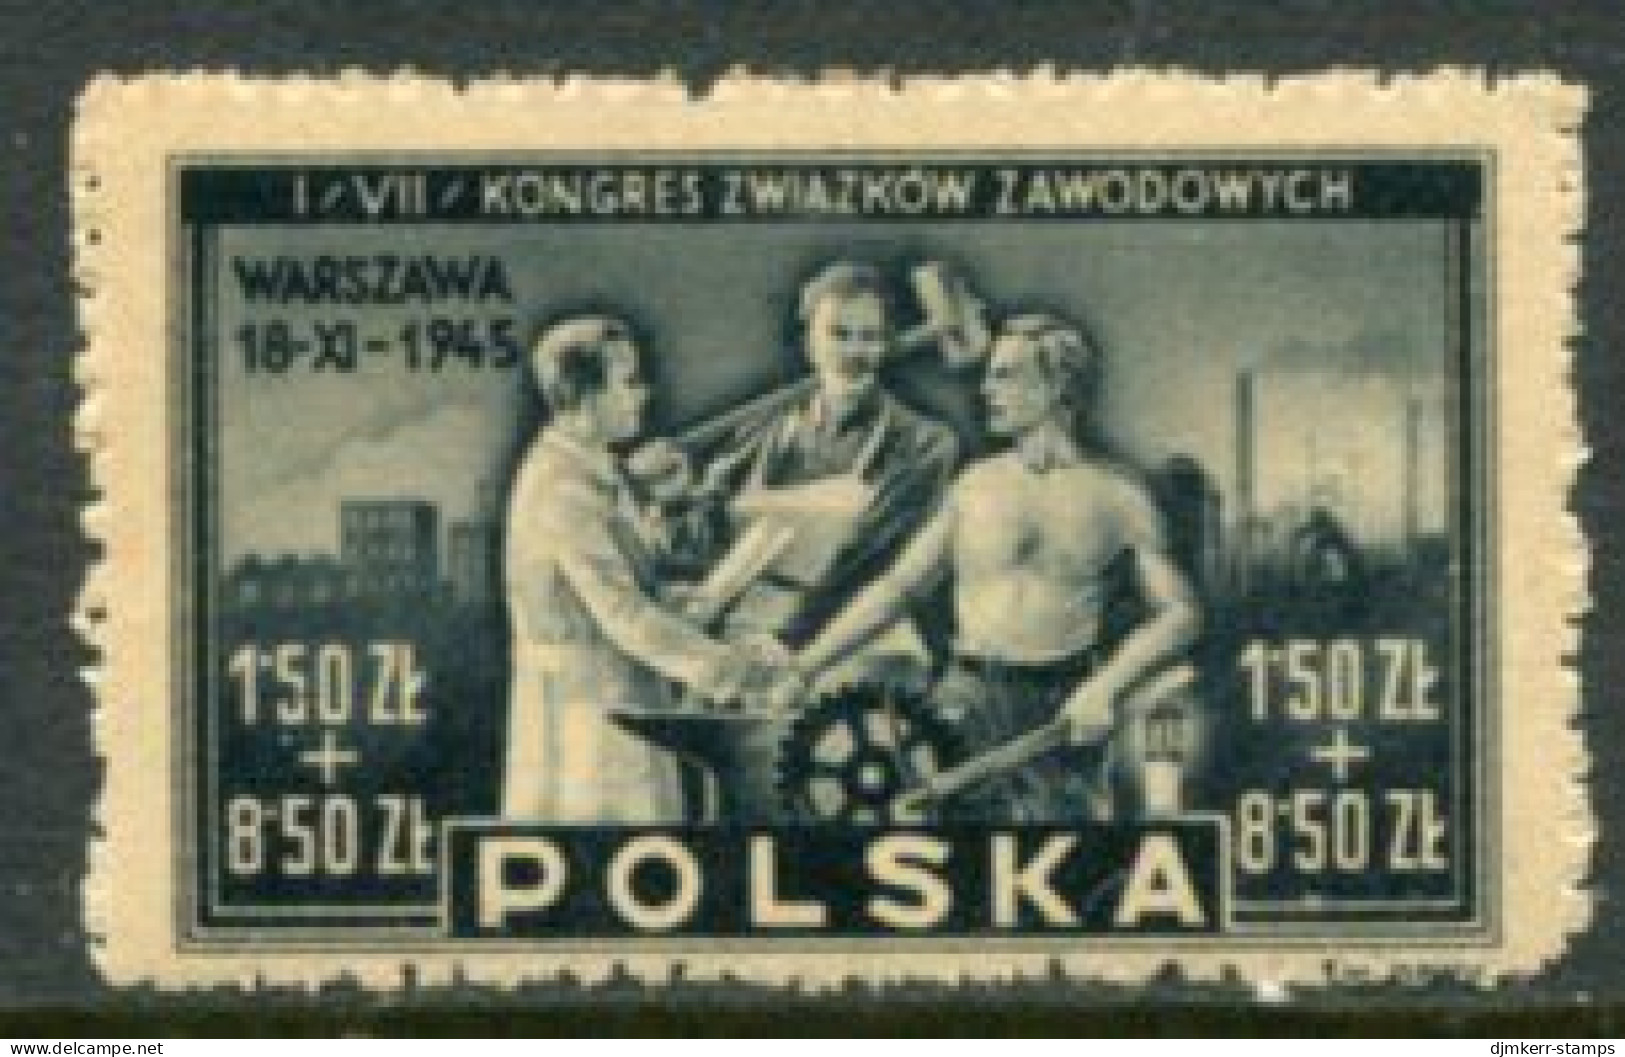 POLAND 1945 Trades Union Congress MNH / **.  Michel 413 - Ungebraucht